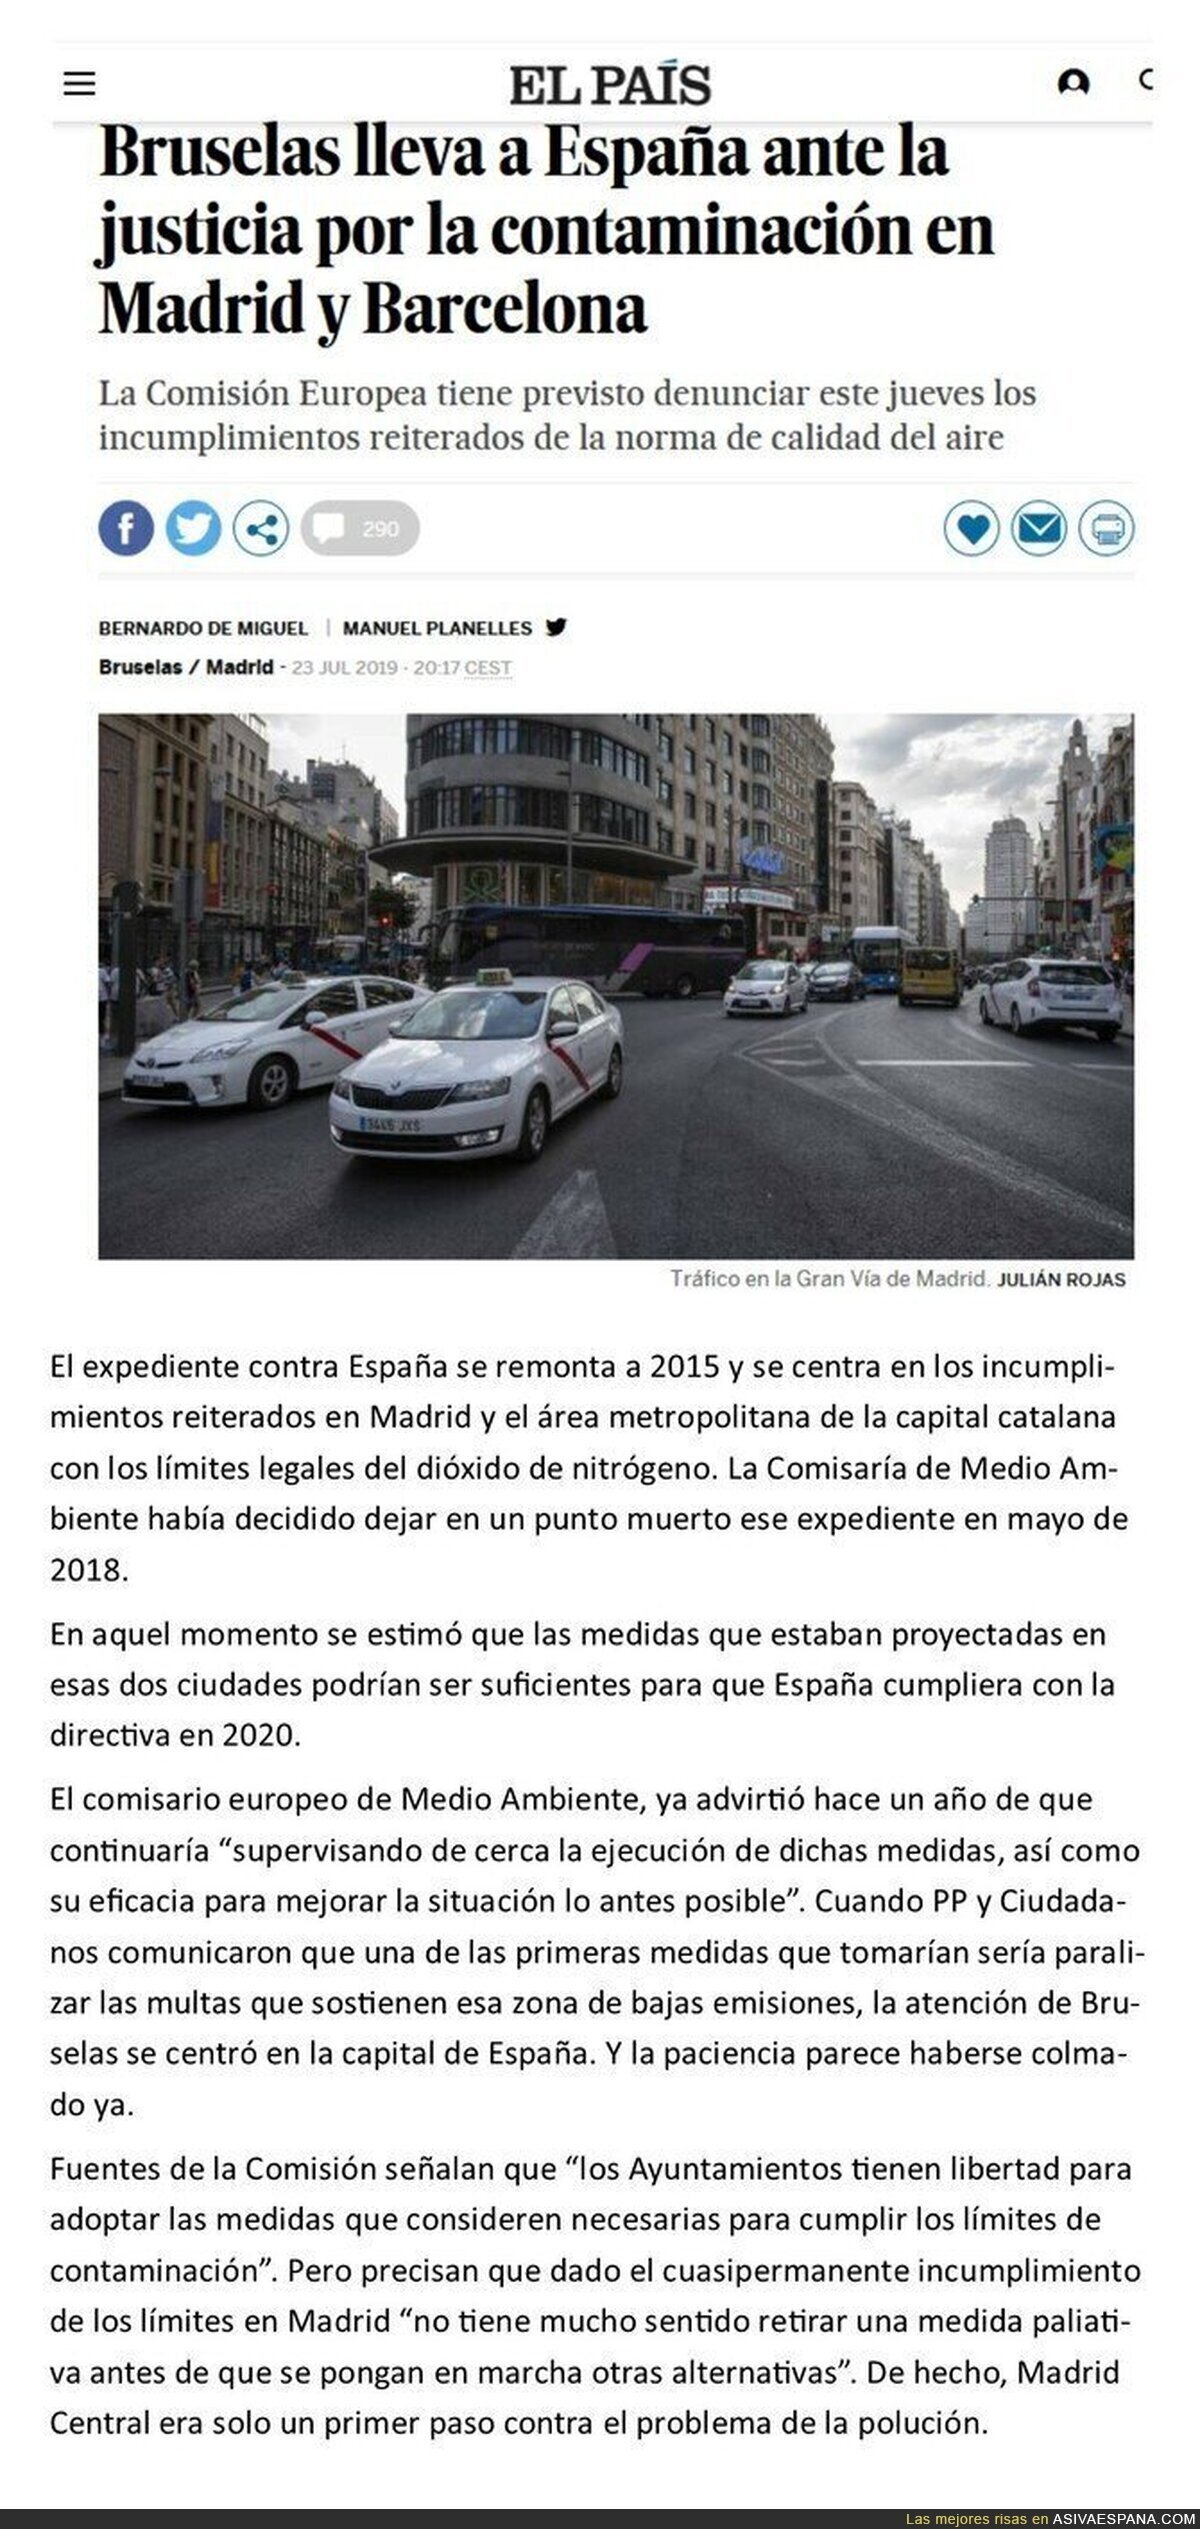 Consecuencias de intentar revertir Madrid Central